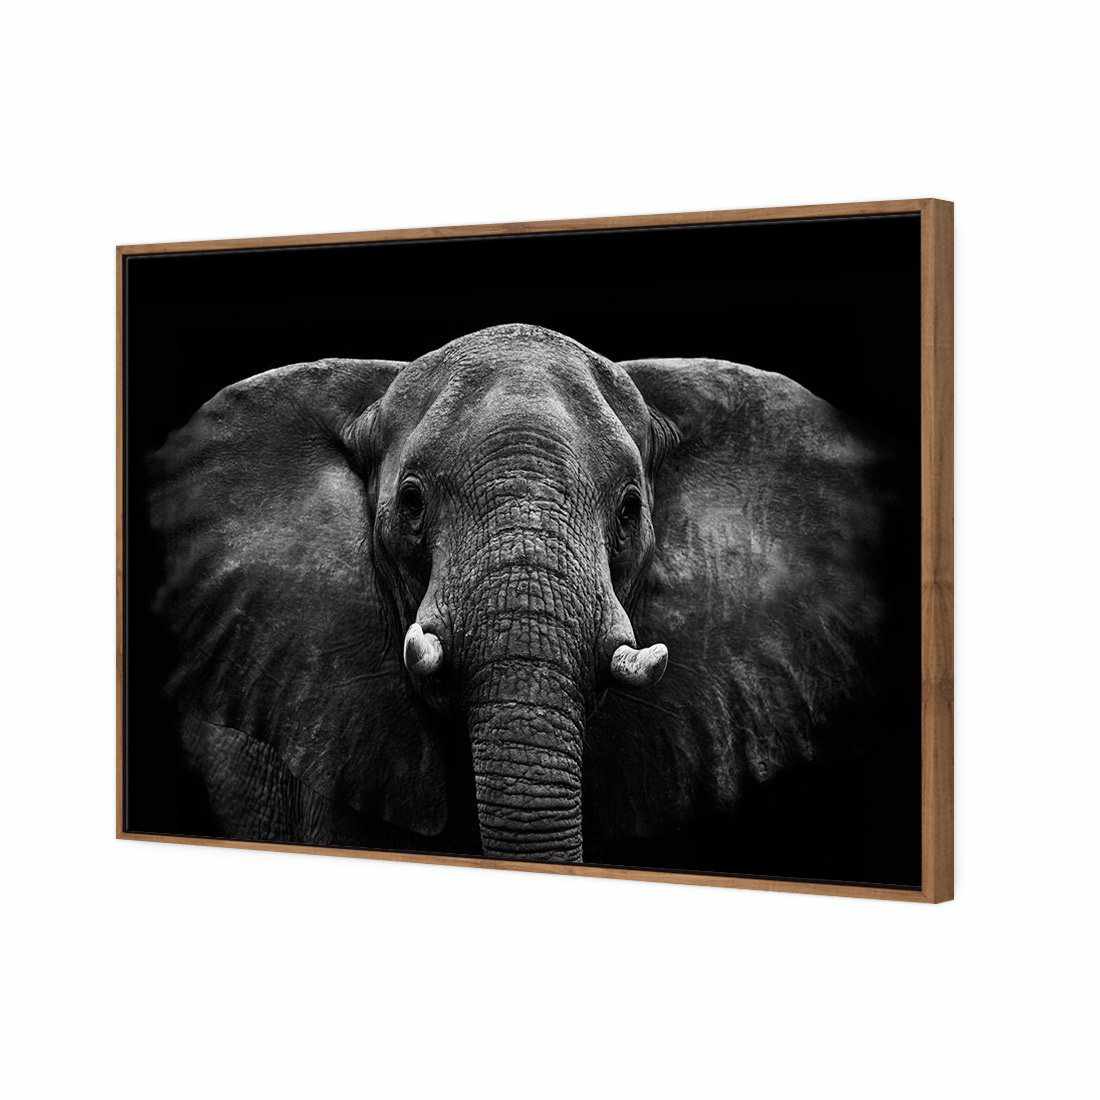 Regal Elephant Canvas Art-Canvas-Wall Art Designs-45x30cm-Canvas - Natural Frame-Wall Art Designs